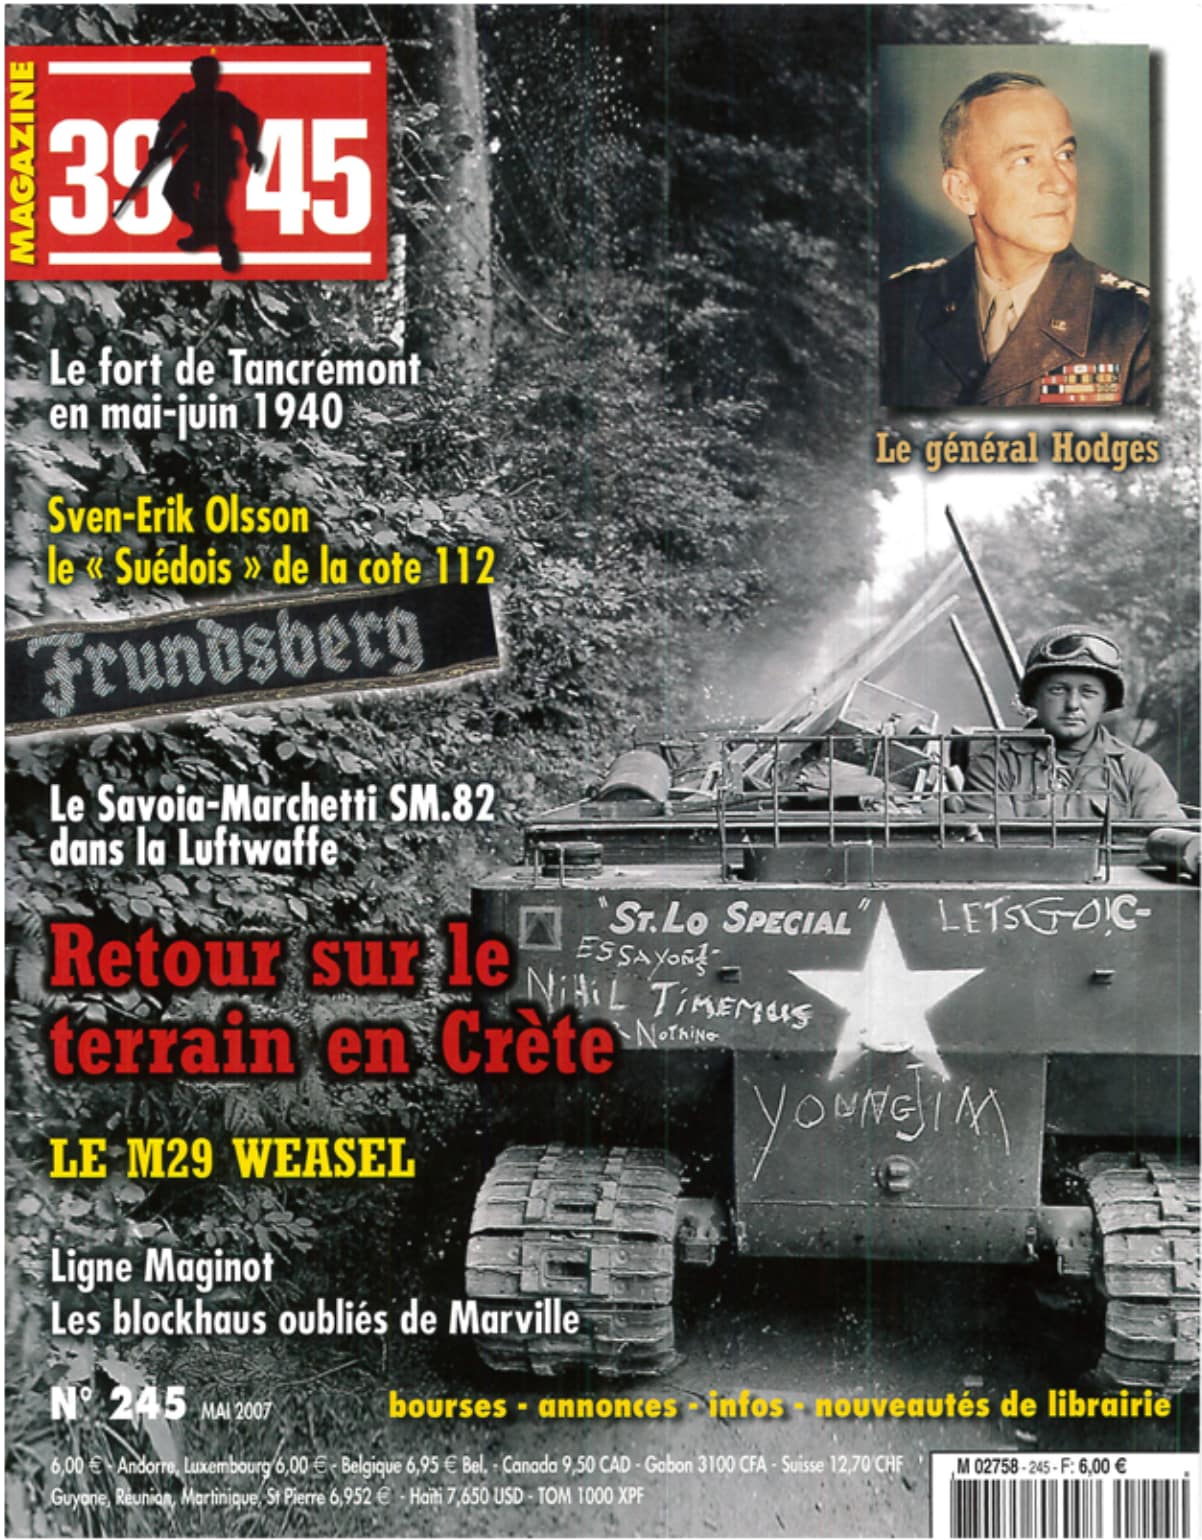 39-45 magazine n° 245 - Les blockhaus oubliés de Marville (1ere partie) - MARY, Jean-Yves - HOHNADEL, Alain